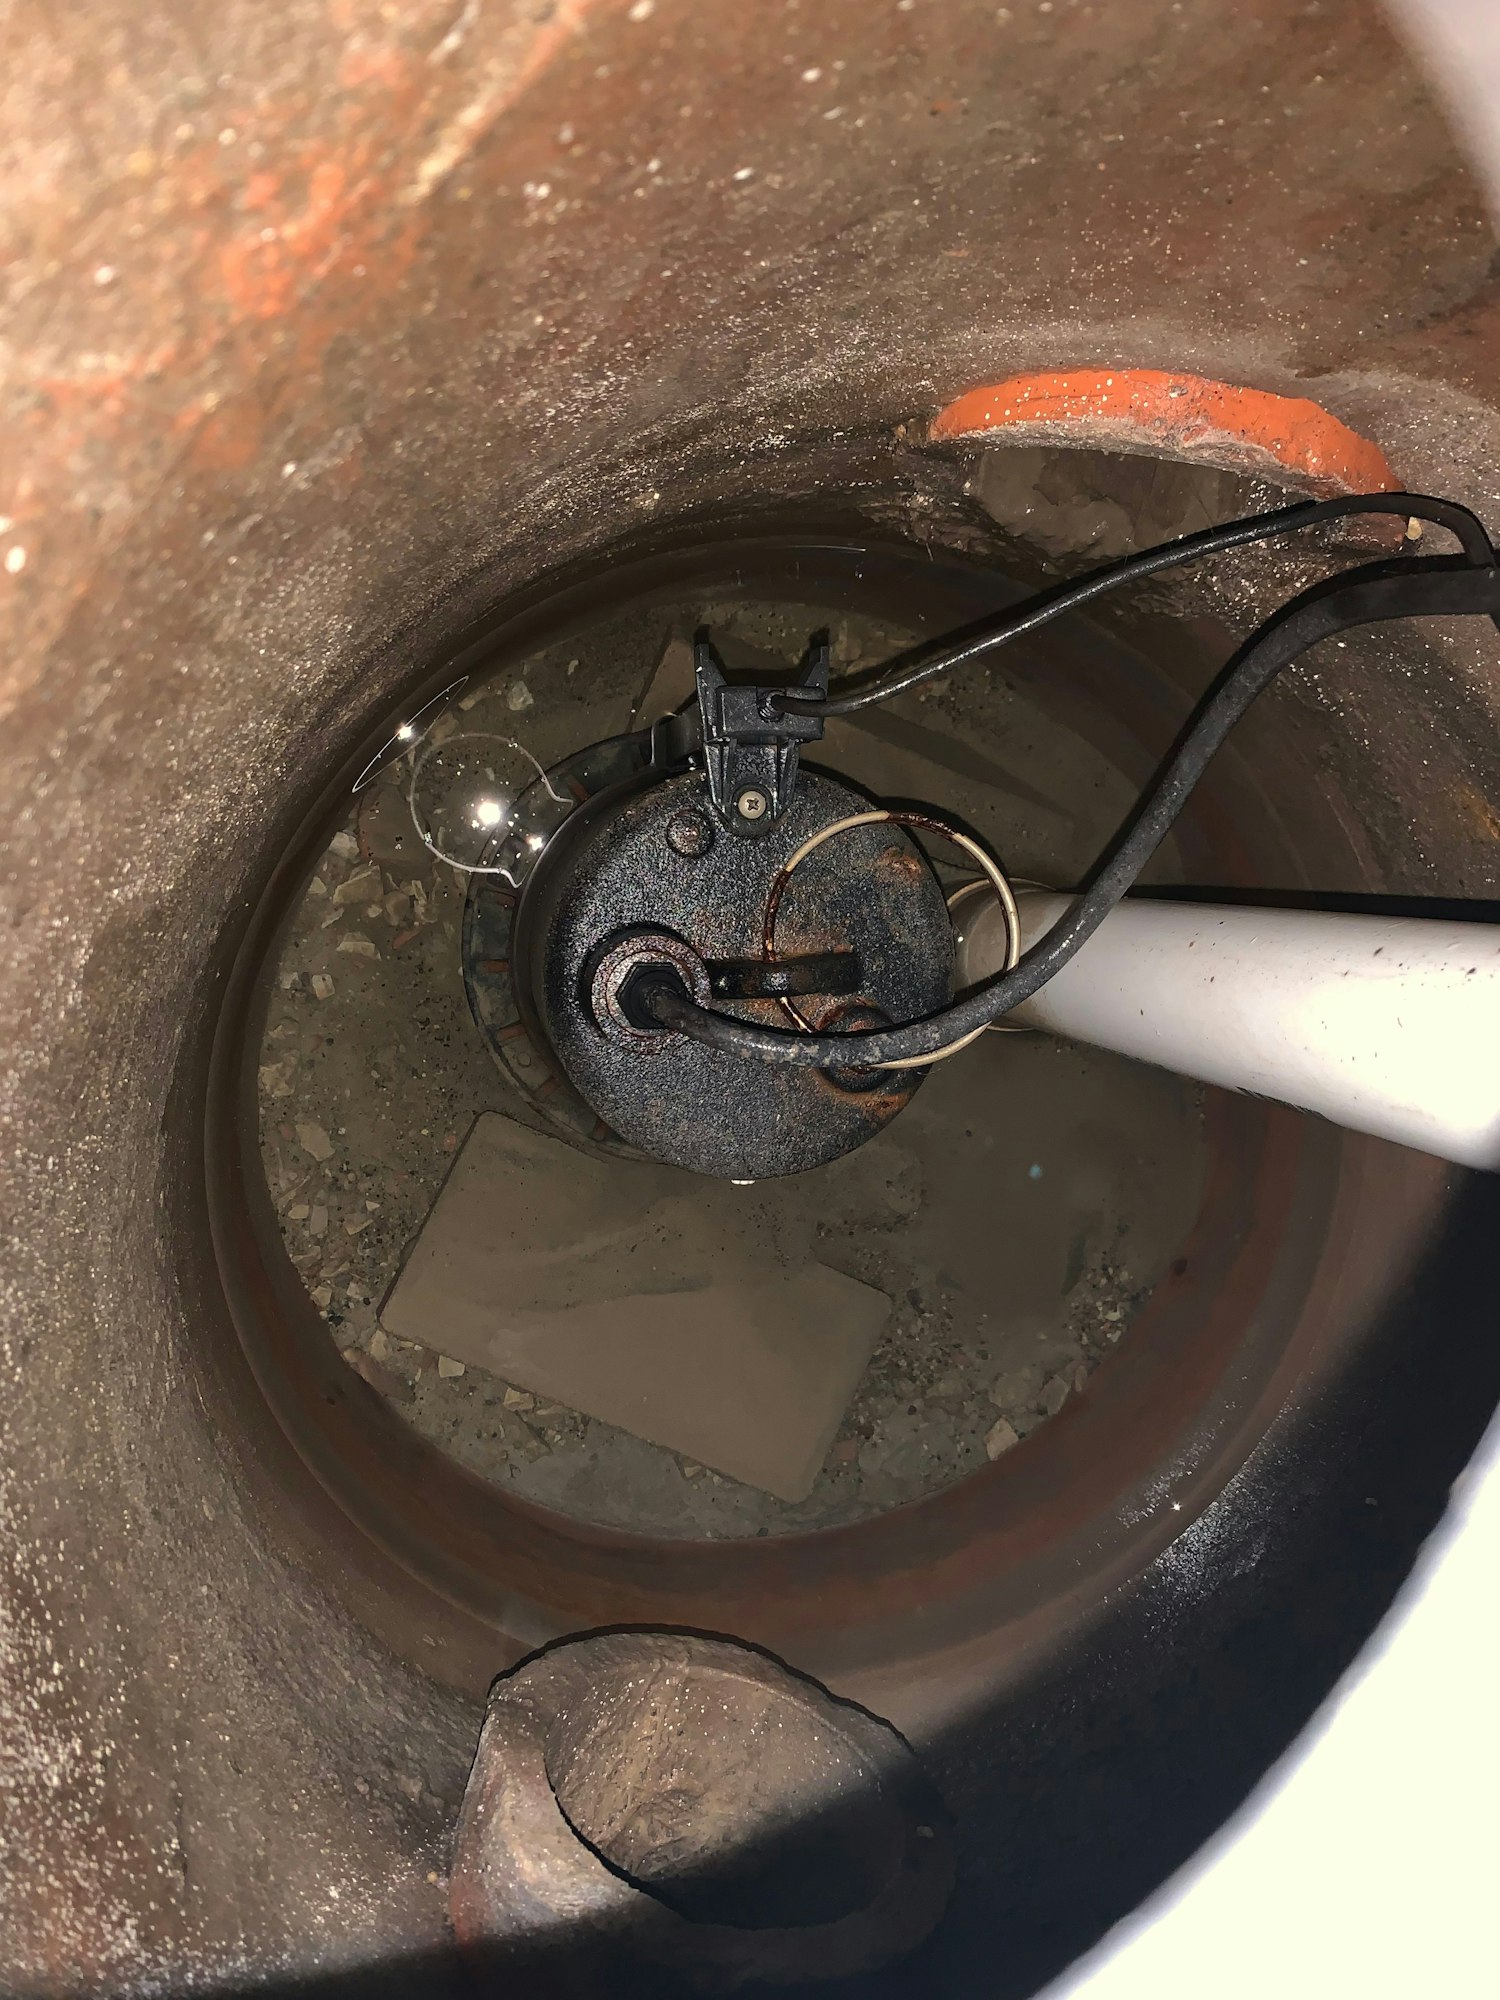 Sump pump repair in Richmond Ca